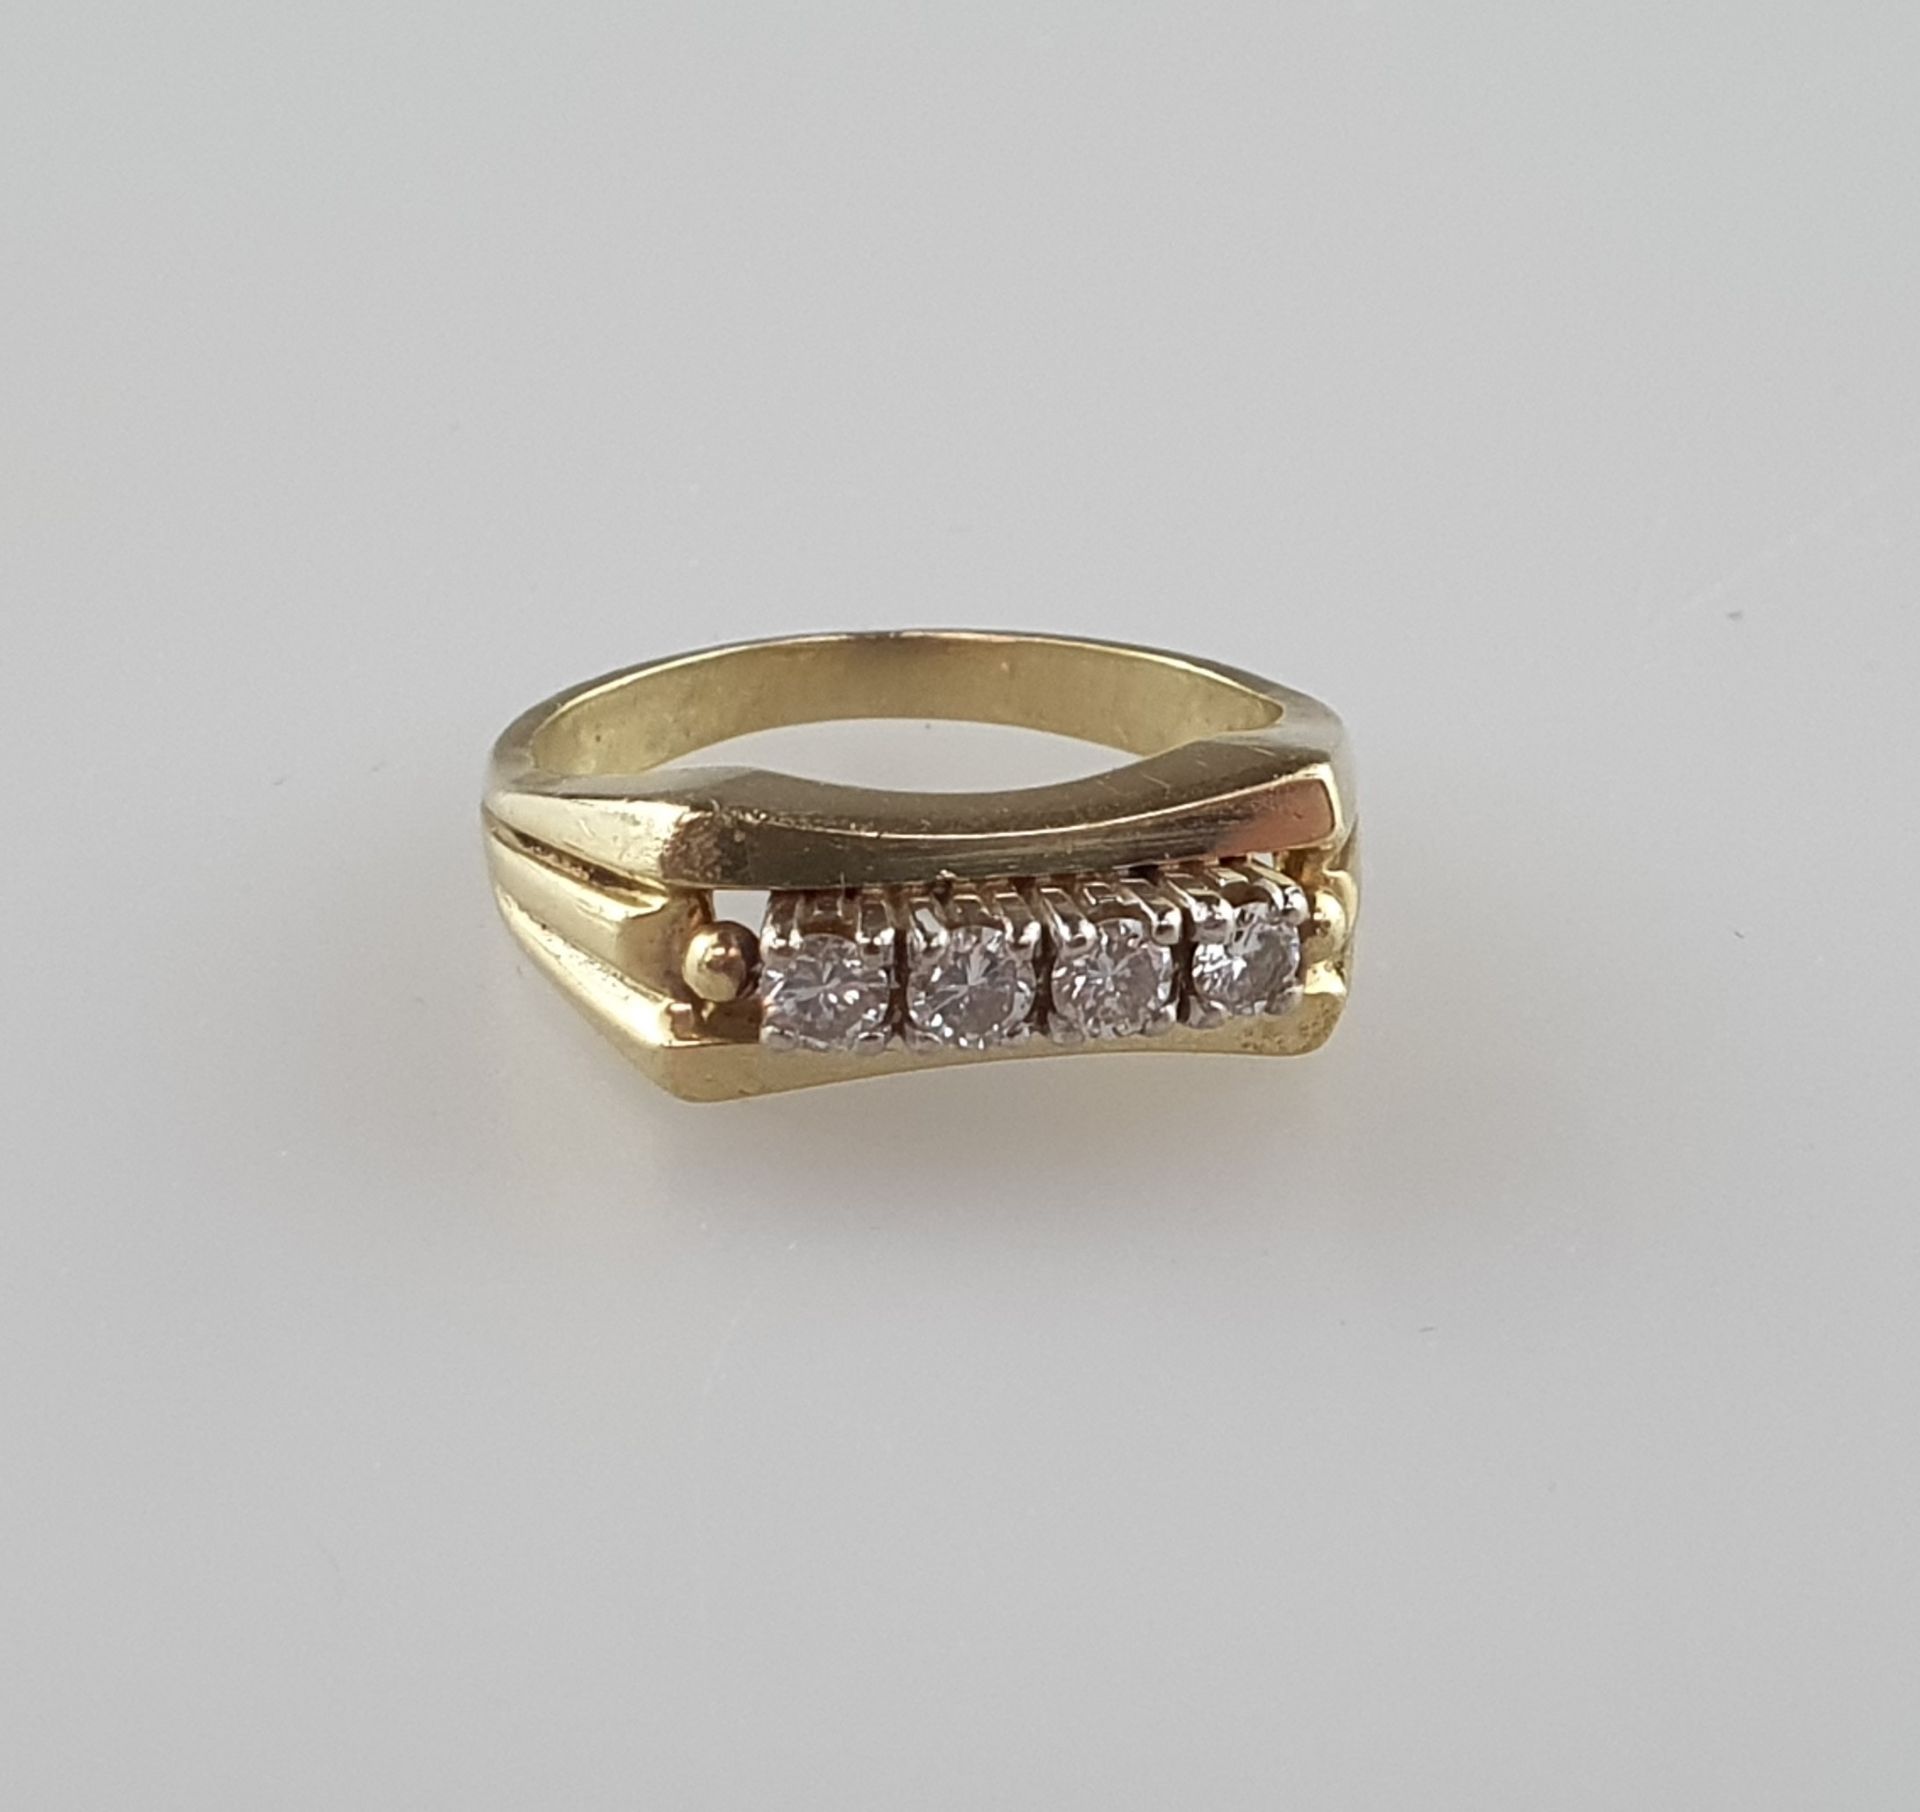 Goldring mit Diamanten - Gelbgold, ungestempelt, länglicher Ringkopf besetzt mit vier Diamanten im 